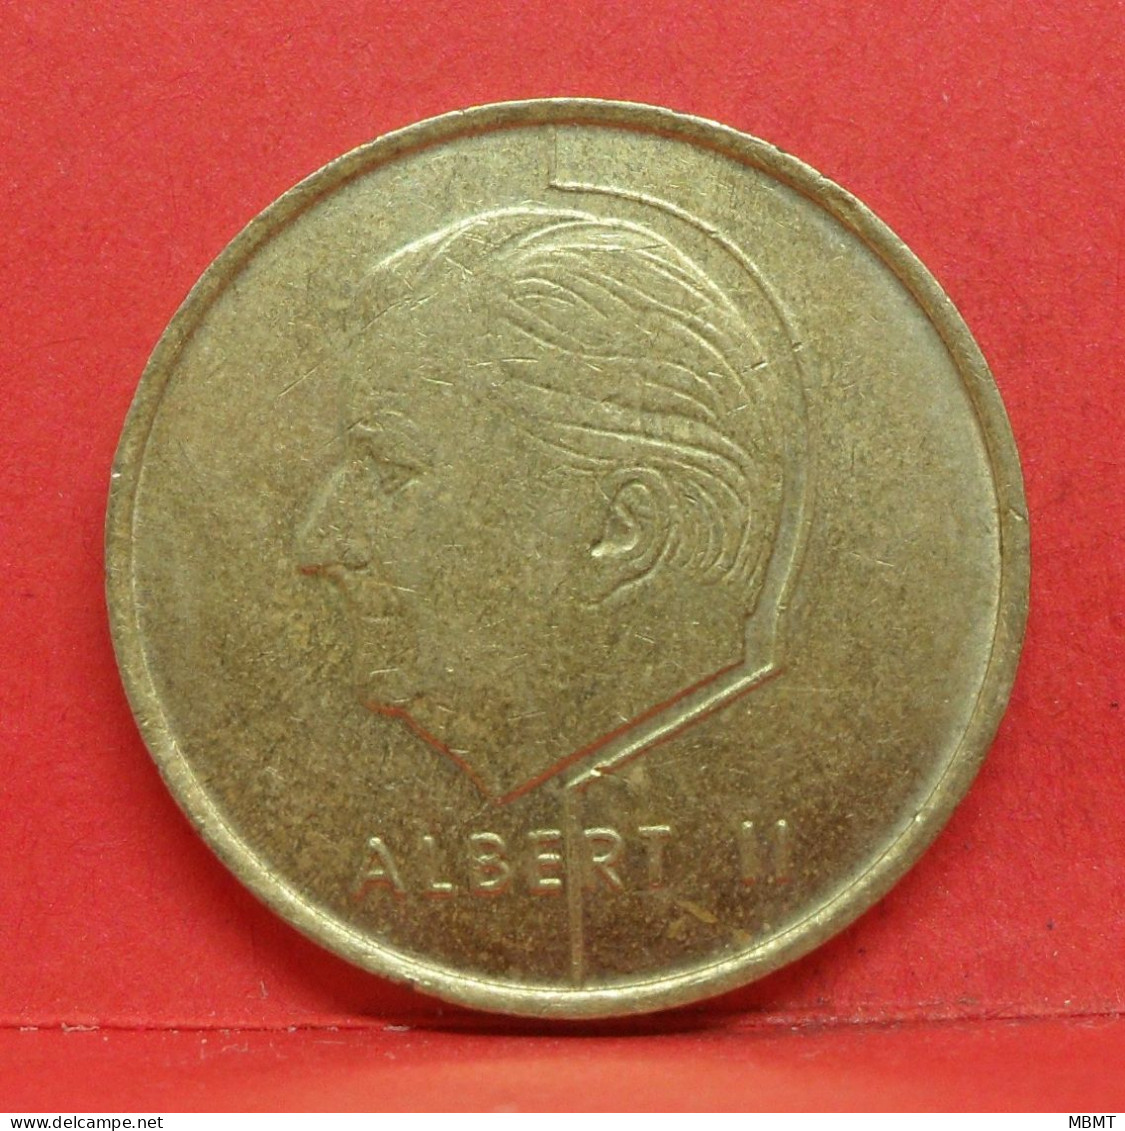 5 Frank 1998 - TTB - Pièce Monnaie Belgie - Article N°2009 - 5 Francs